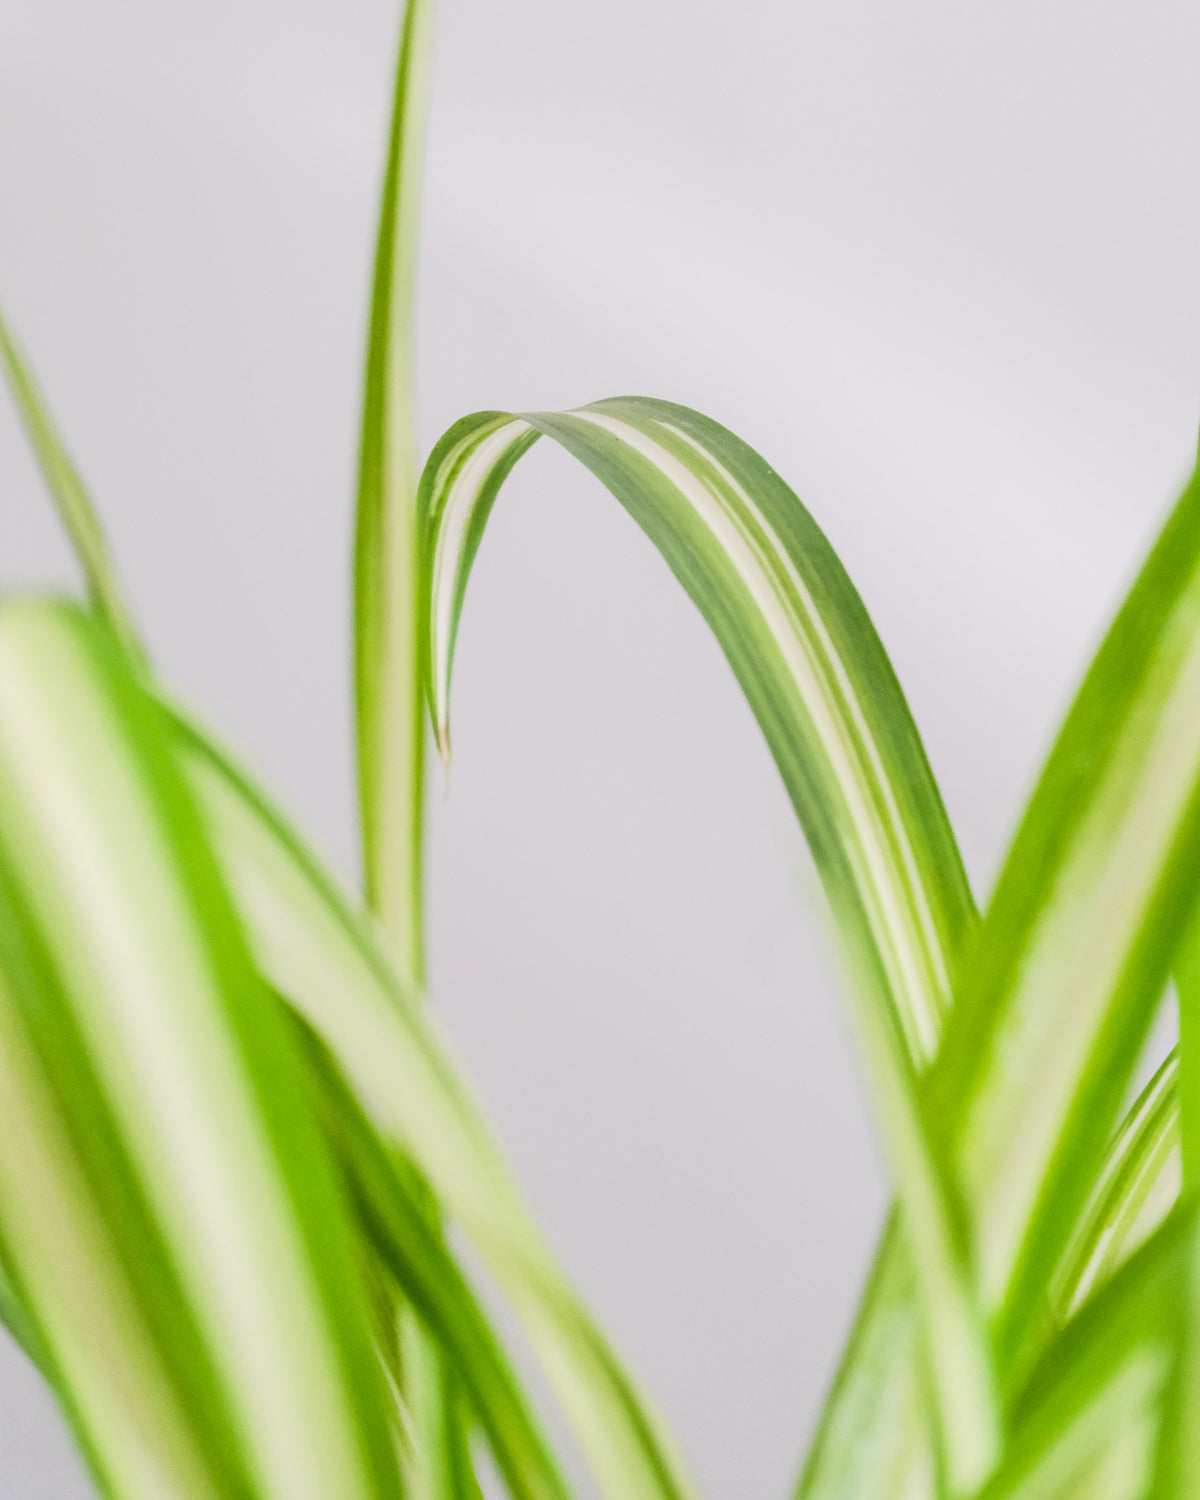 Weiss-grünes Blattdetail der Grossen Grünlilie